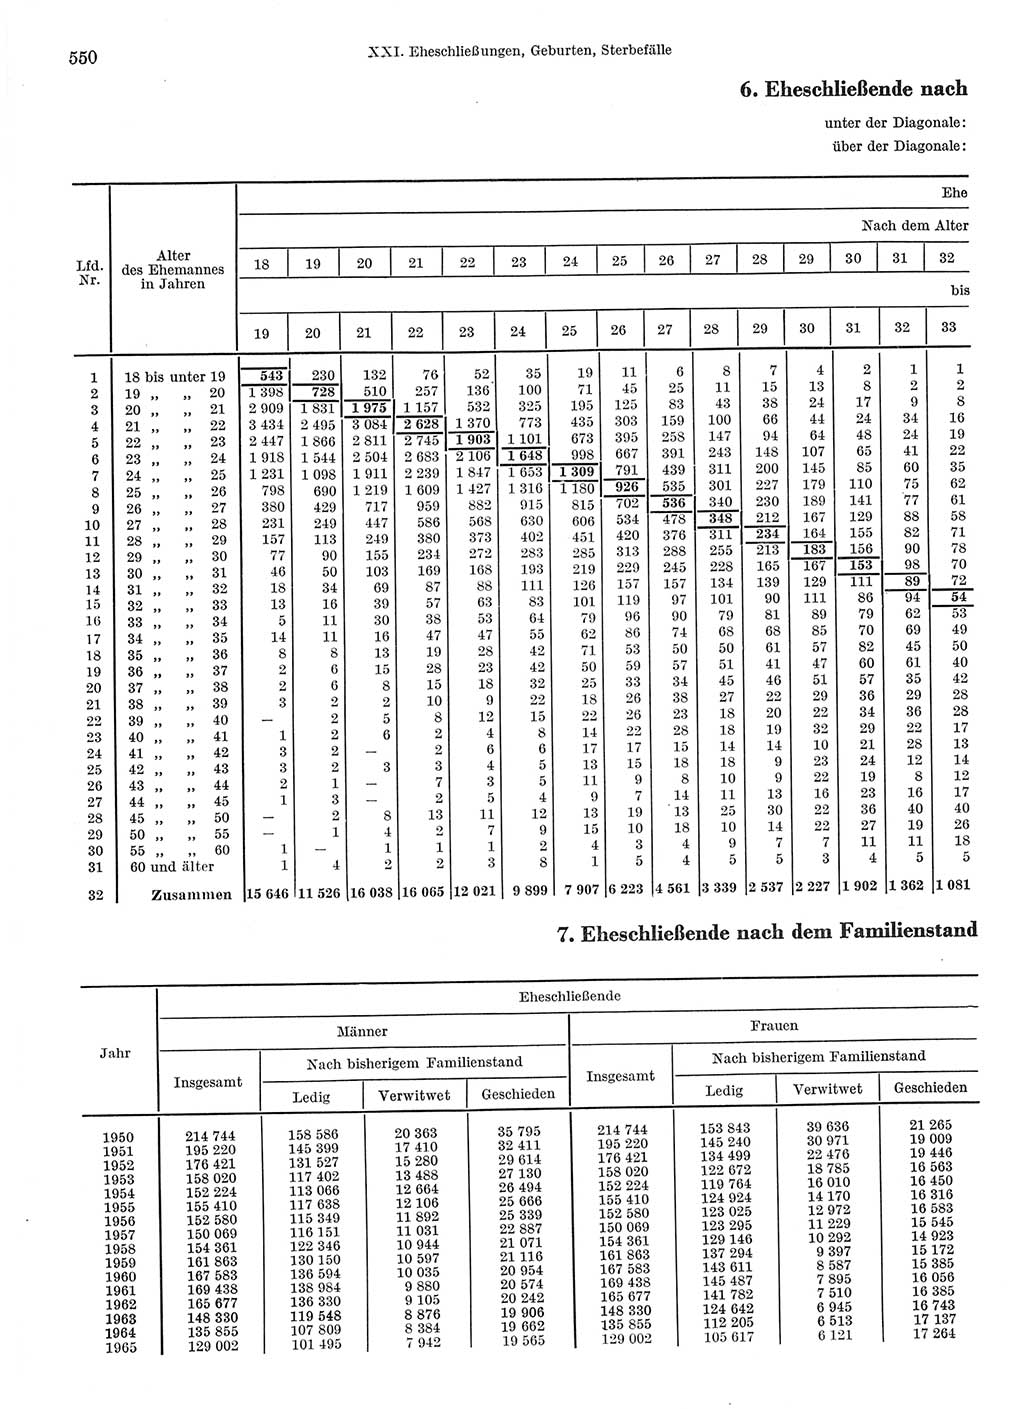 Statistisches Jahrbuch der Deutschen Demokratischen Republik (DDR) 1967, Seite 550 (Stat. Jb. DDR 1967, S. 550)